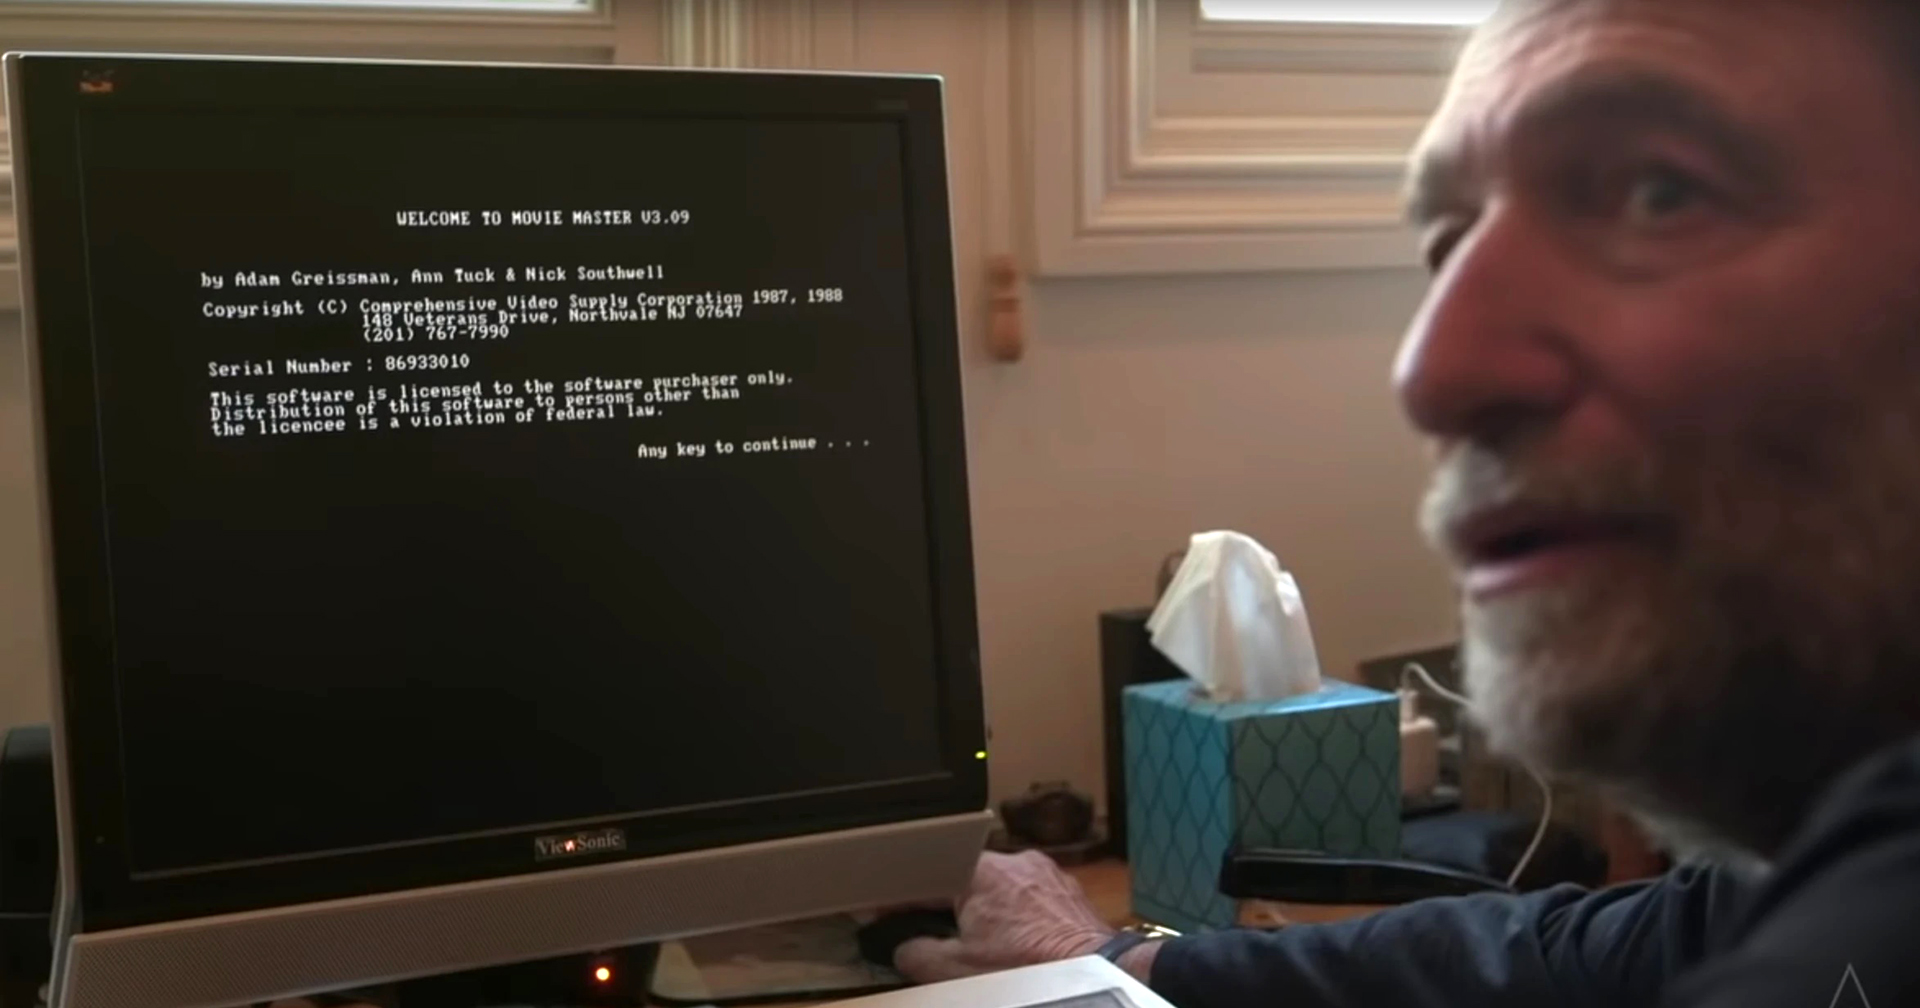 อีริก รอธ เขียนท ‘Dune’ ด้วยซอฟต์แวร์ MS-DOS อายุกว่า 30 ปี